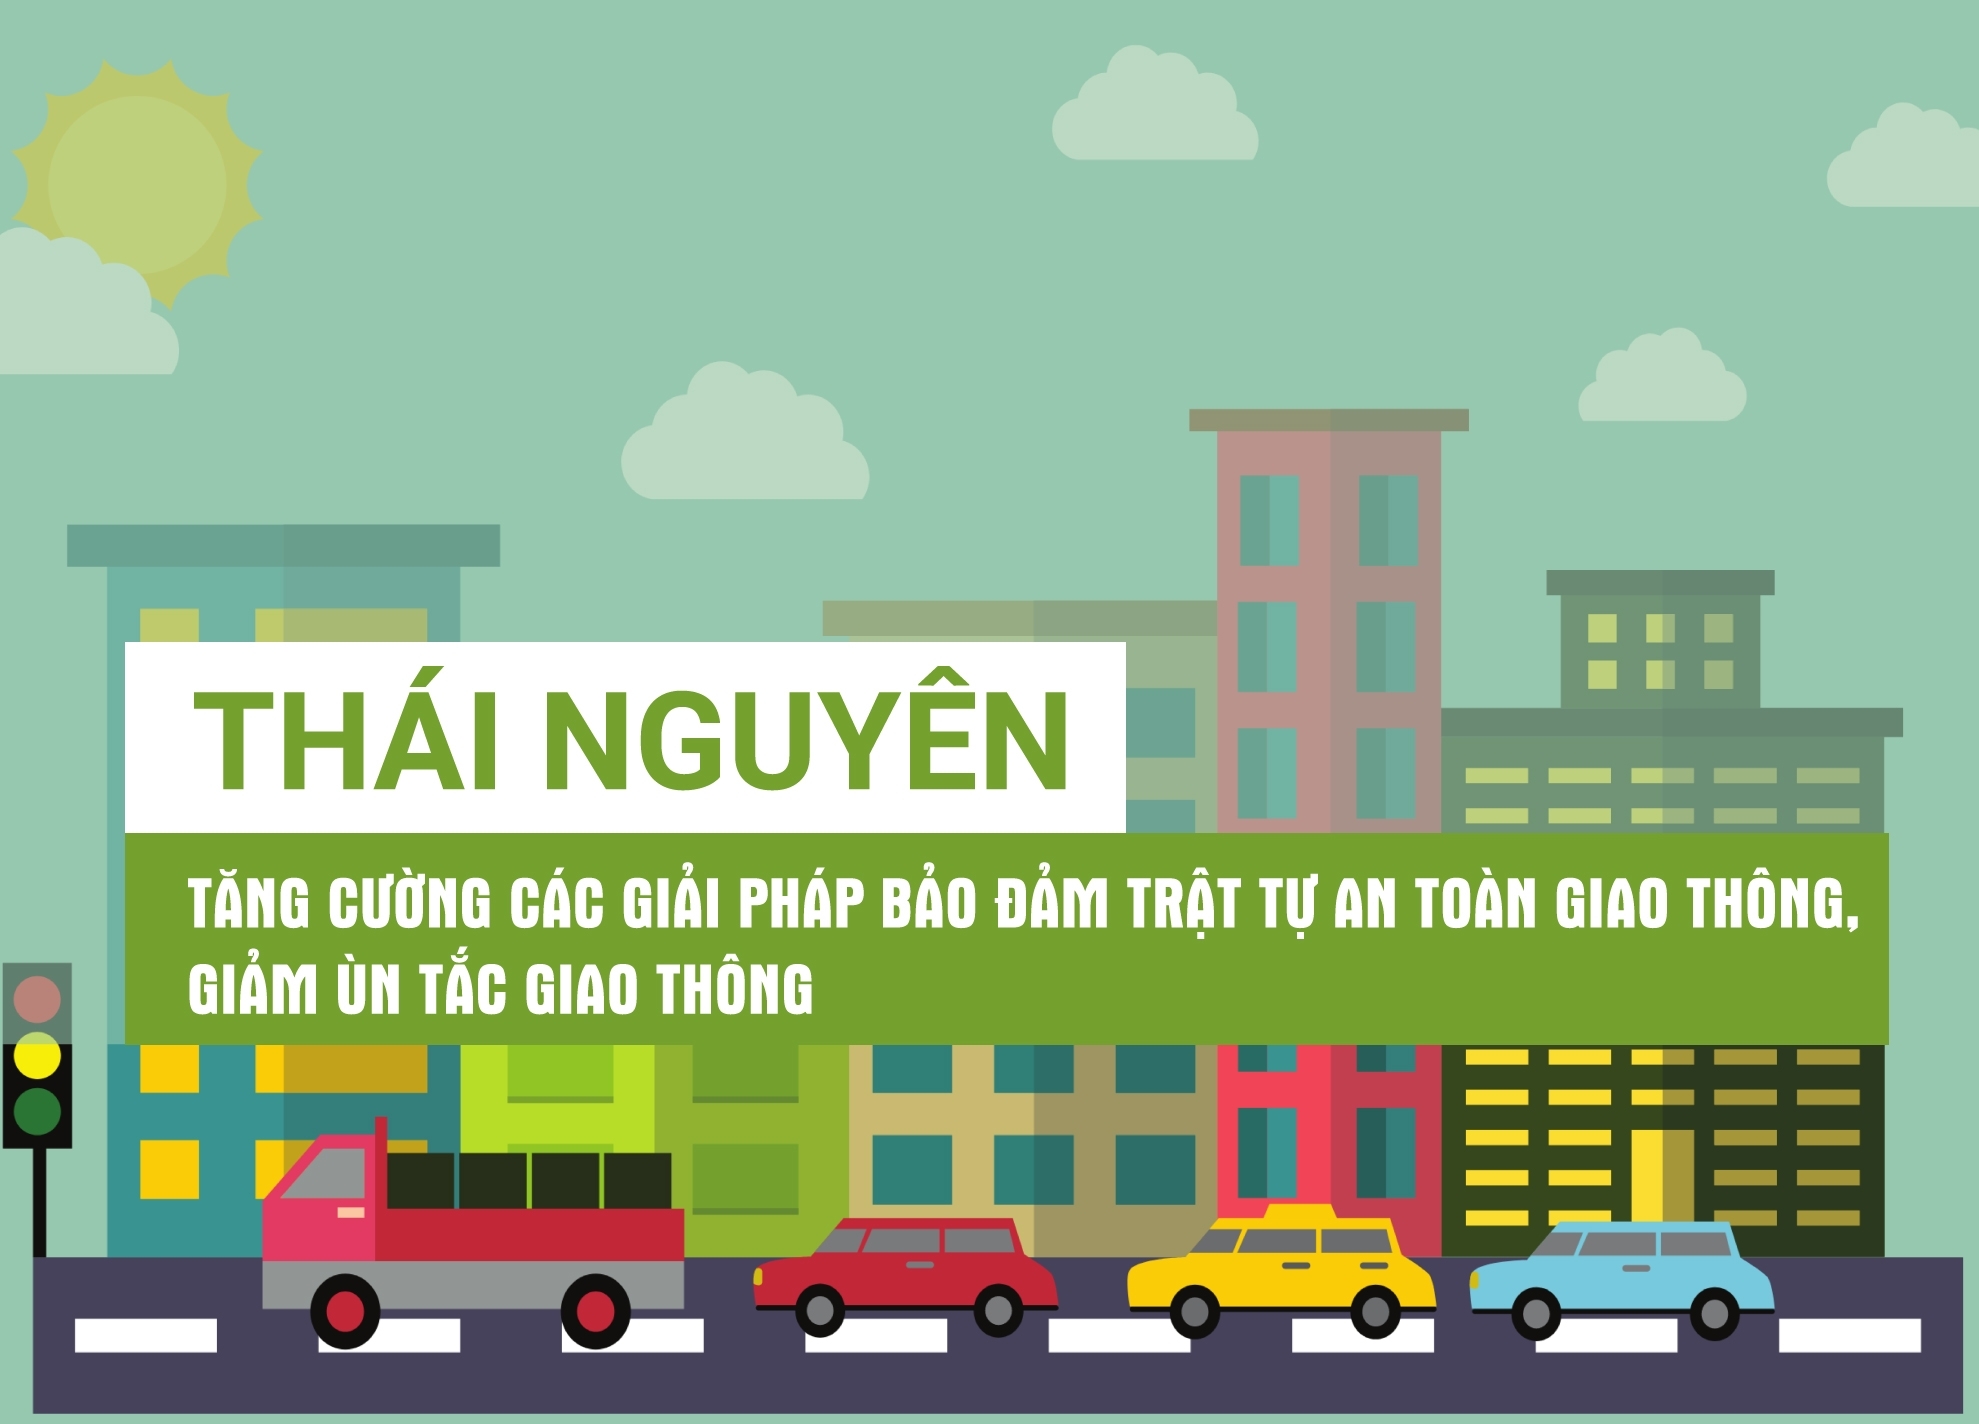 [Infographic] Thái Nguyên: Tăng cường các giải pháp bảo đảm trật tự an toàn giao thông